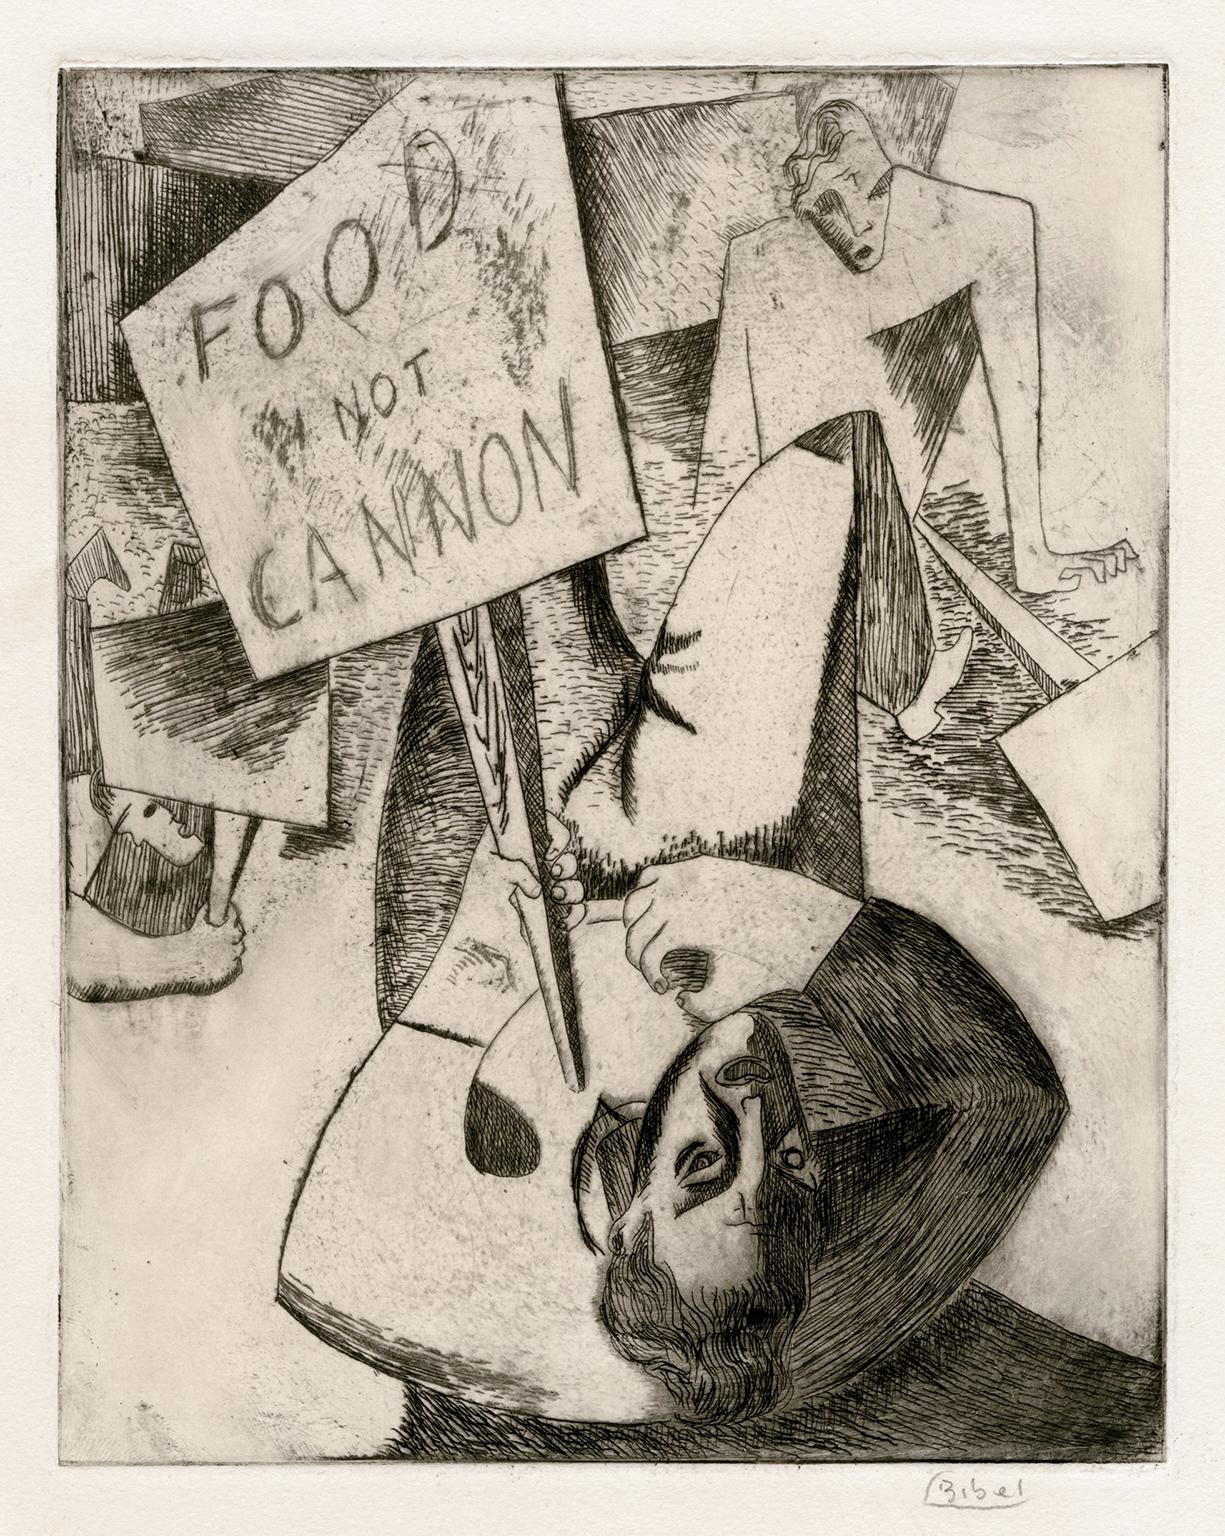 Leon Bibel Figurative Print – 'Food Not Cannon' - seltenes modernistisches Werk der WPA  Soziales Gewissen